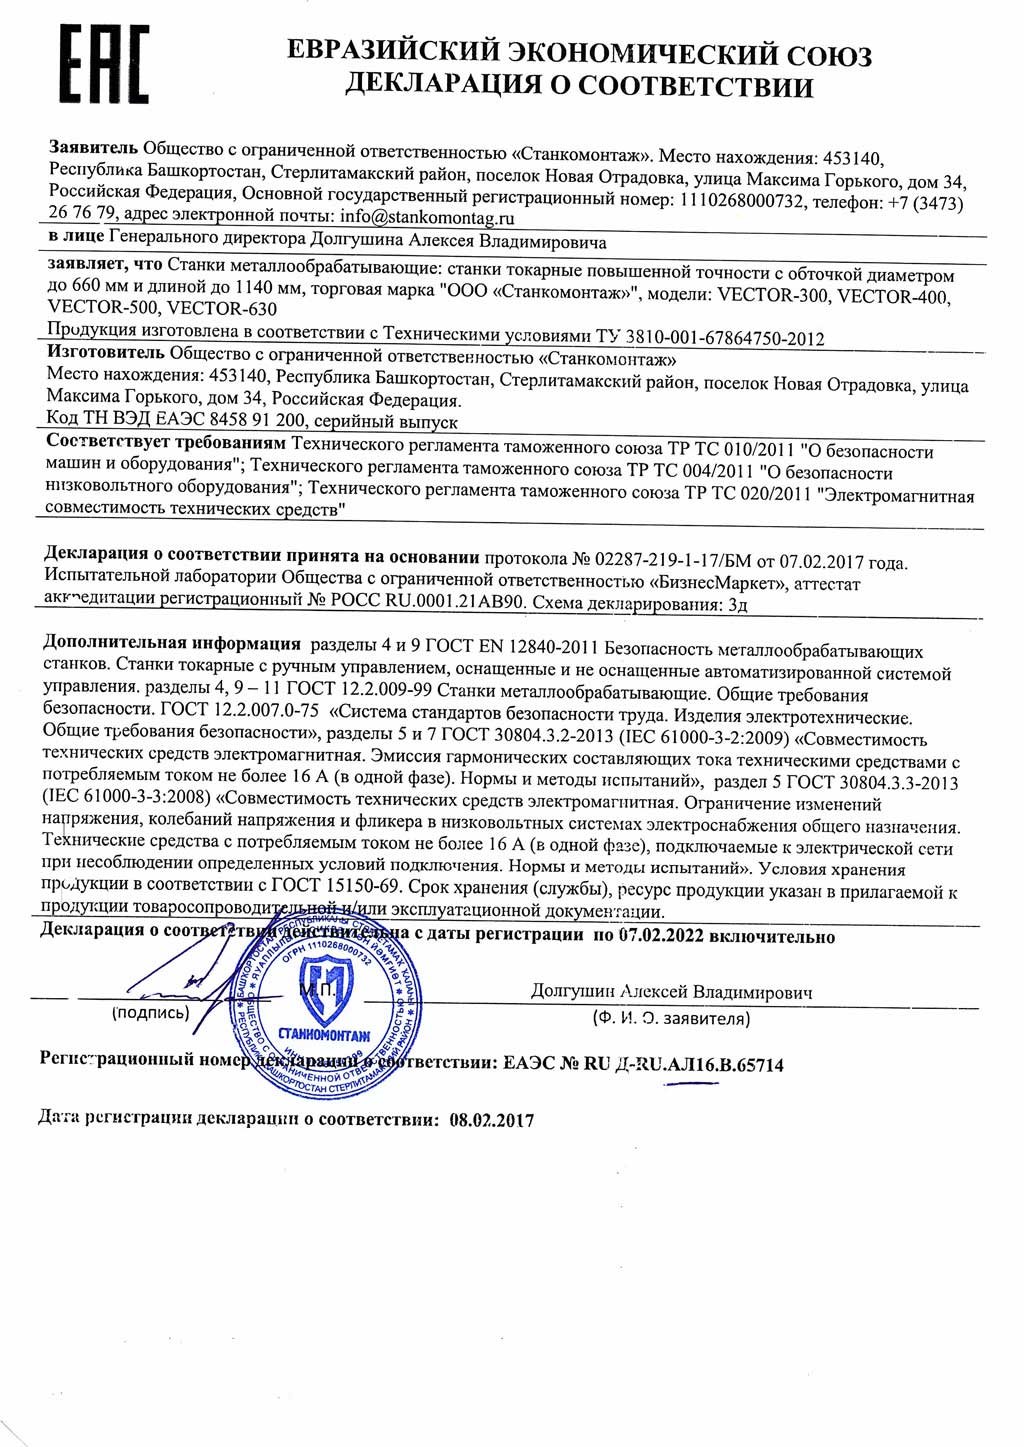 Сертификат на токарные станки повышенной точнсти